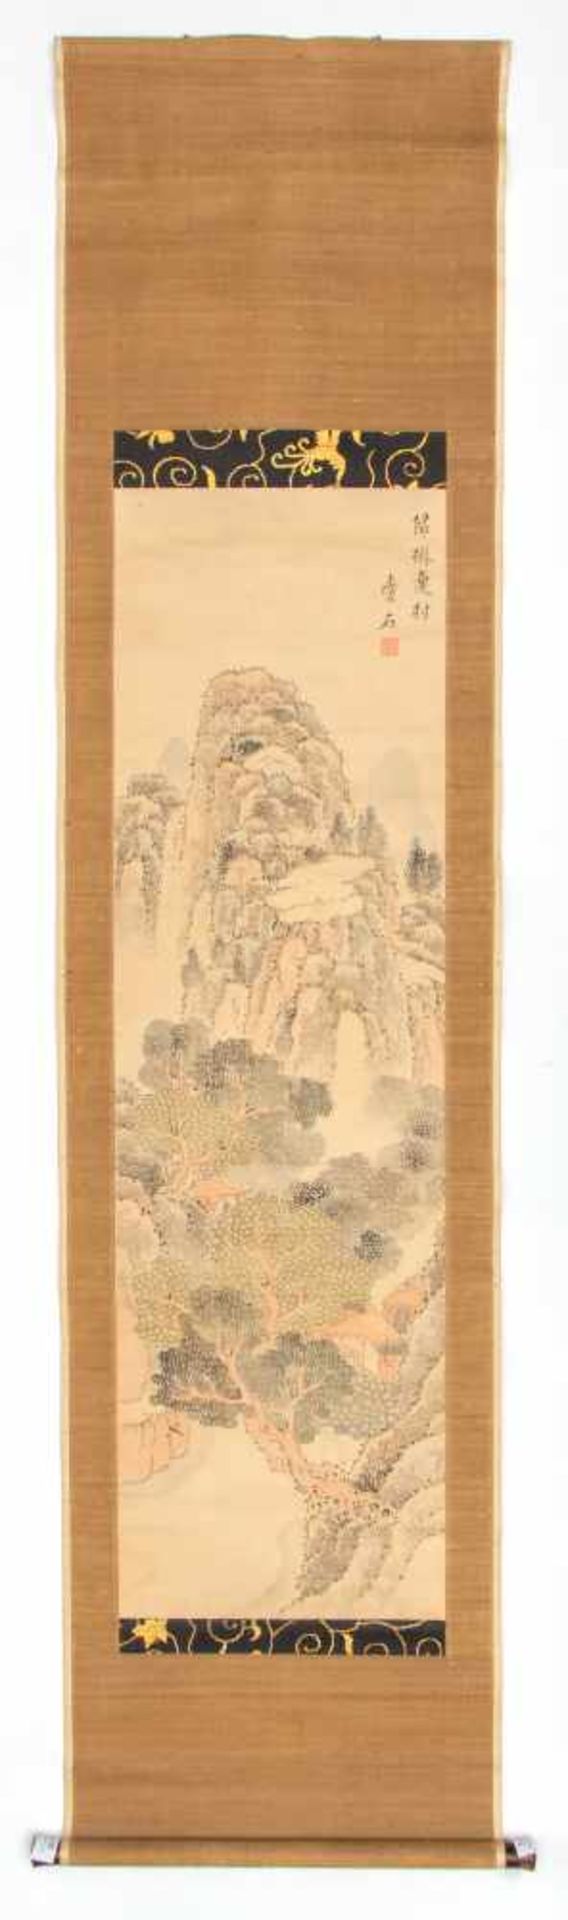 Japan, rolschildering, getint landschapin de stijl van Ikeno Taiga door monnik Aiseki; h. 105 en - Bild 3 aus 3